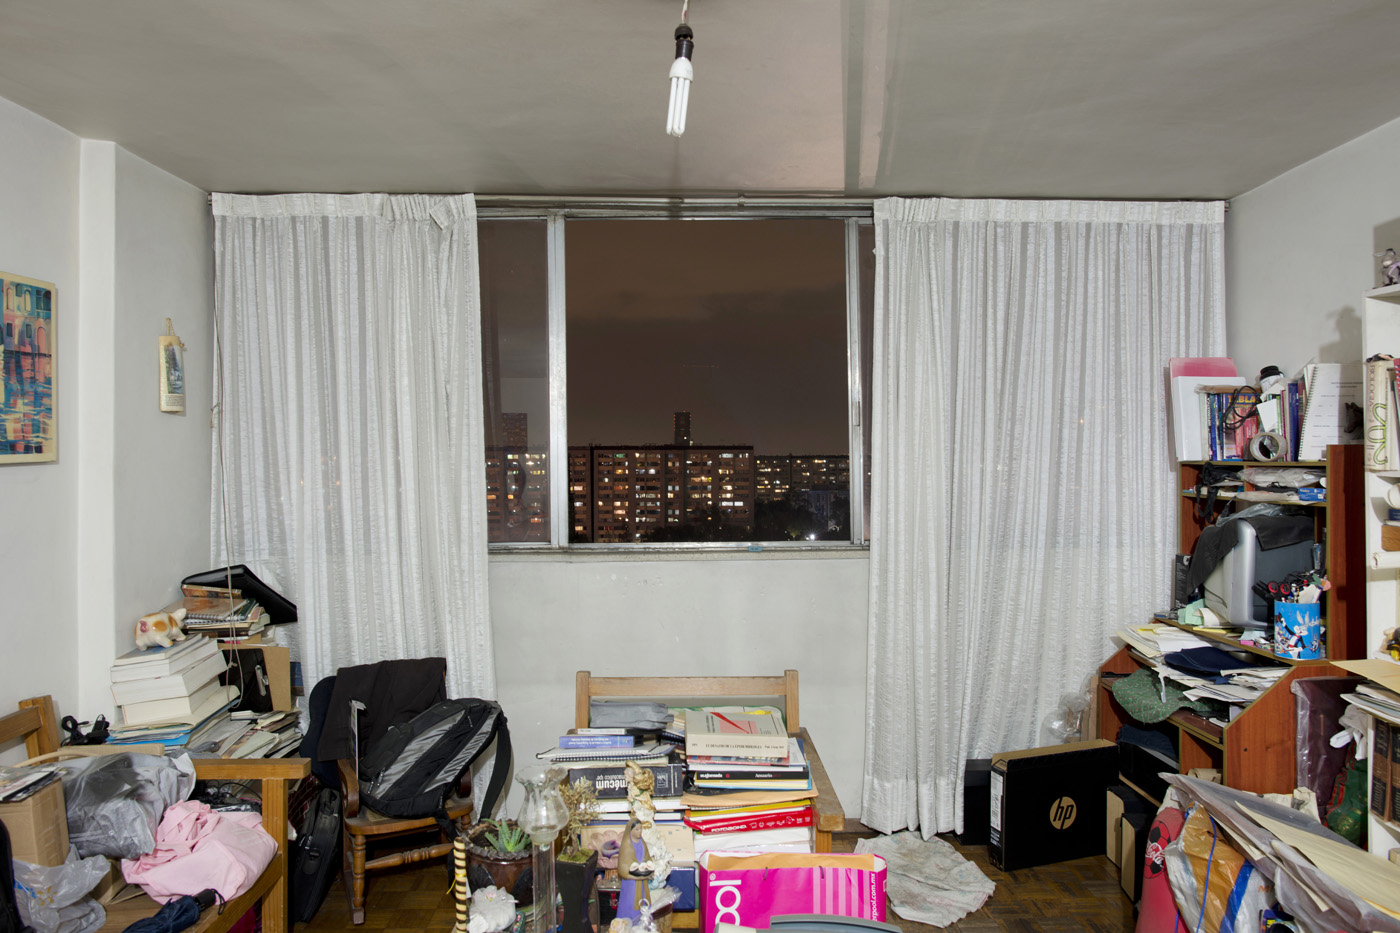 C-1209, Fernando Torres Salgado. The interior livingroom windows of apartments in the Chihuahua building of Tlatelolco. Mario Pani´s Tlatelolco, plaza de las 3 culturas, Mexico DF